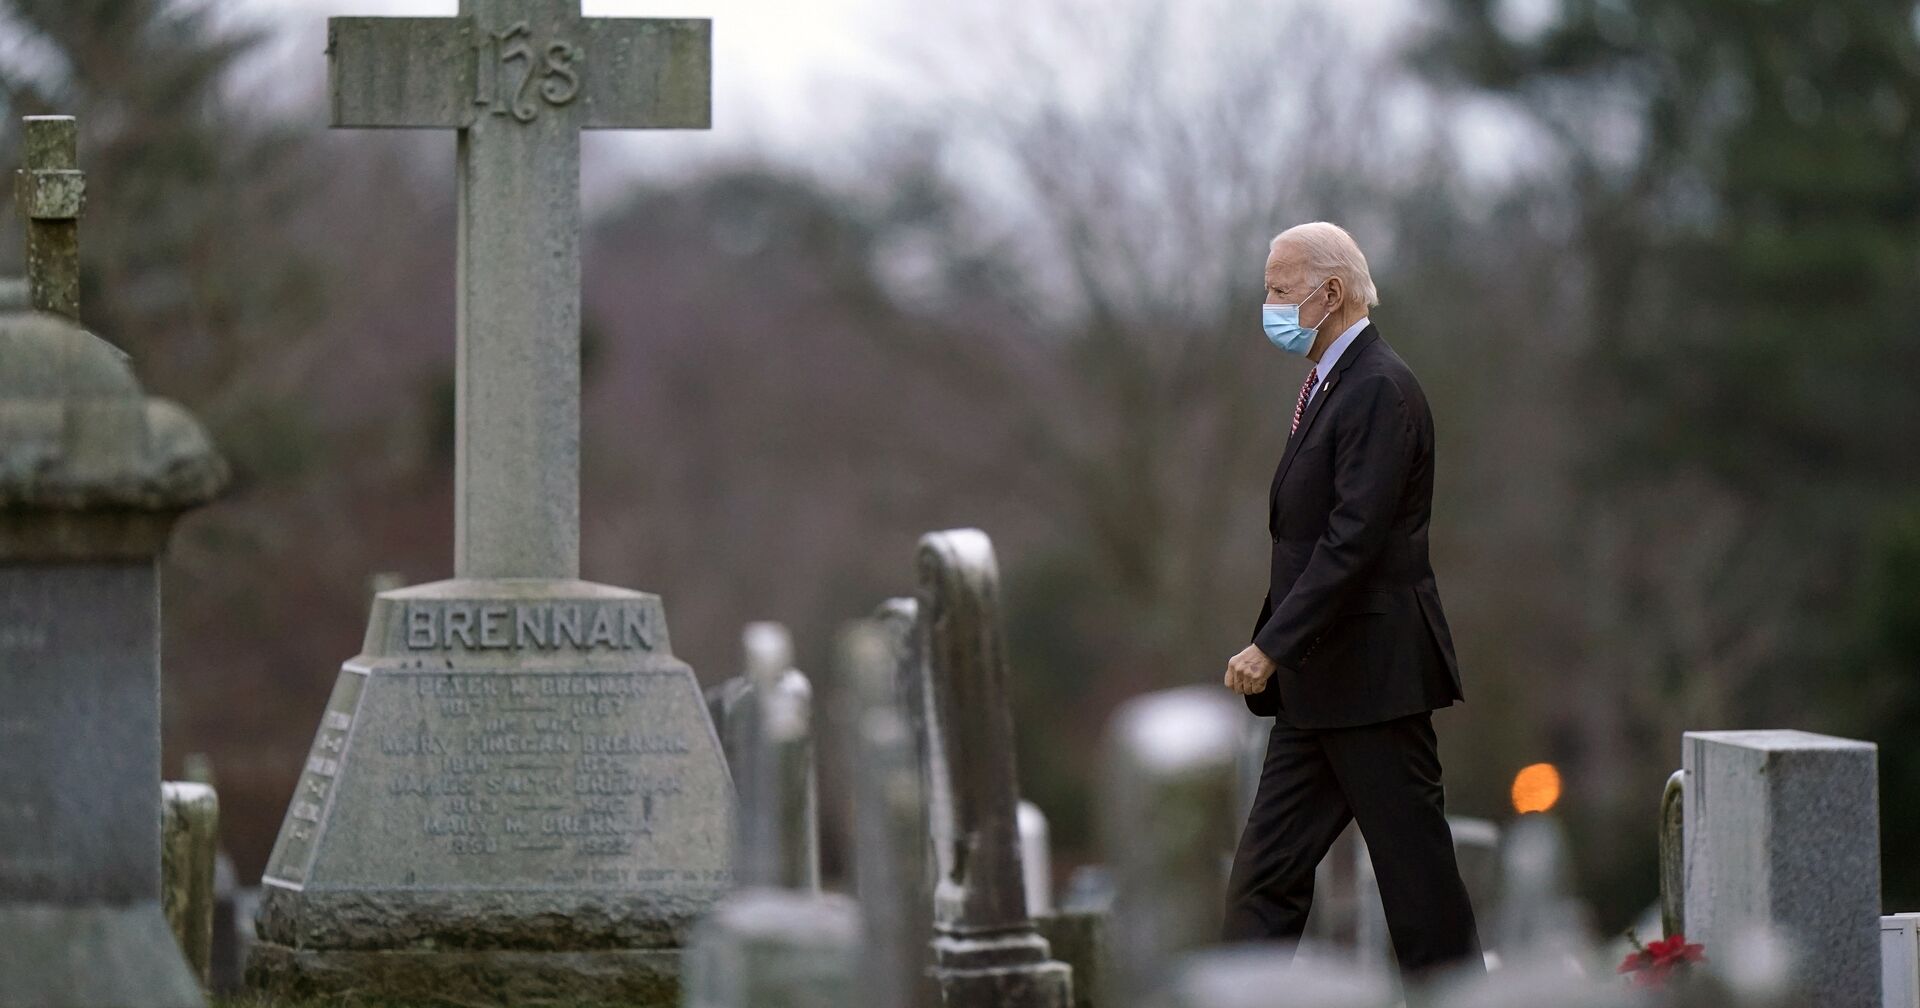 Избранный президент Джо Байден на кладбище в Уилмингтоне, Делавэр, США - ИноСМИ, 1920, 20.01.2021